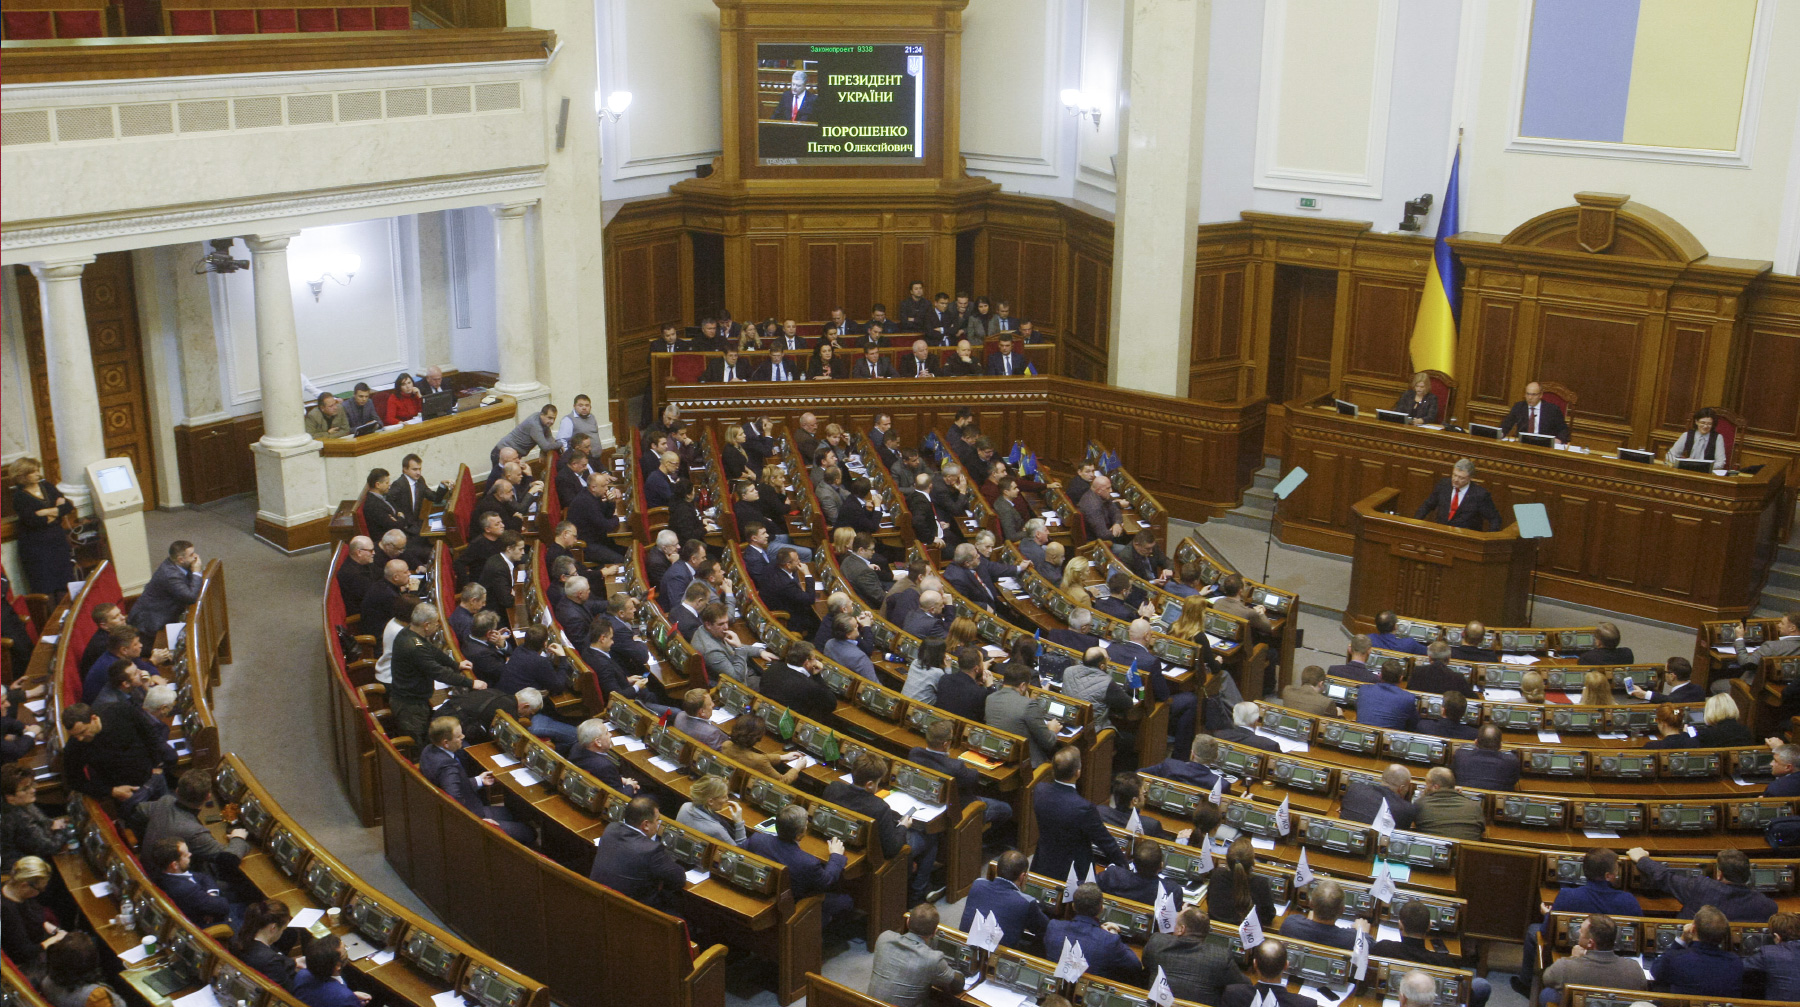 Особый режим будет действовать до 28 декабря 2018 года в десяти регионах Украины Фото: © GLOBAL LOOK Press / Pavlo Gonchar / ZUMAPRESS.com